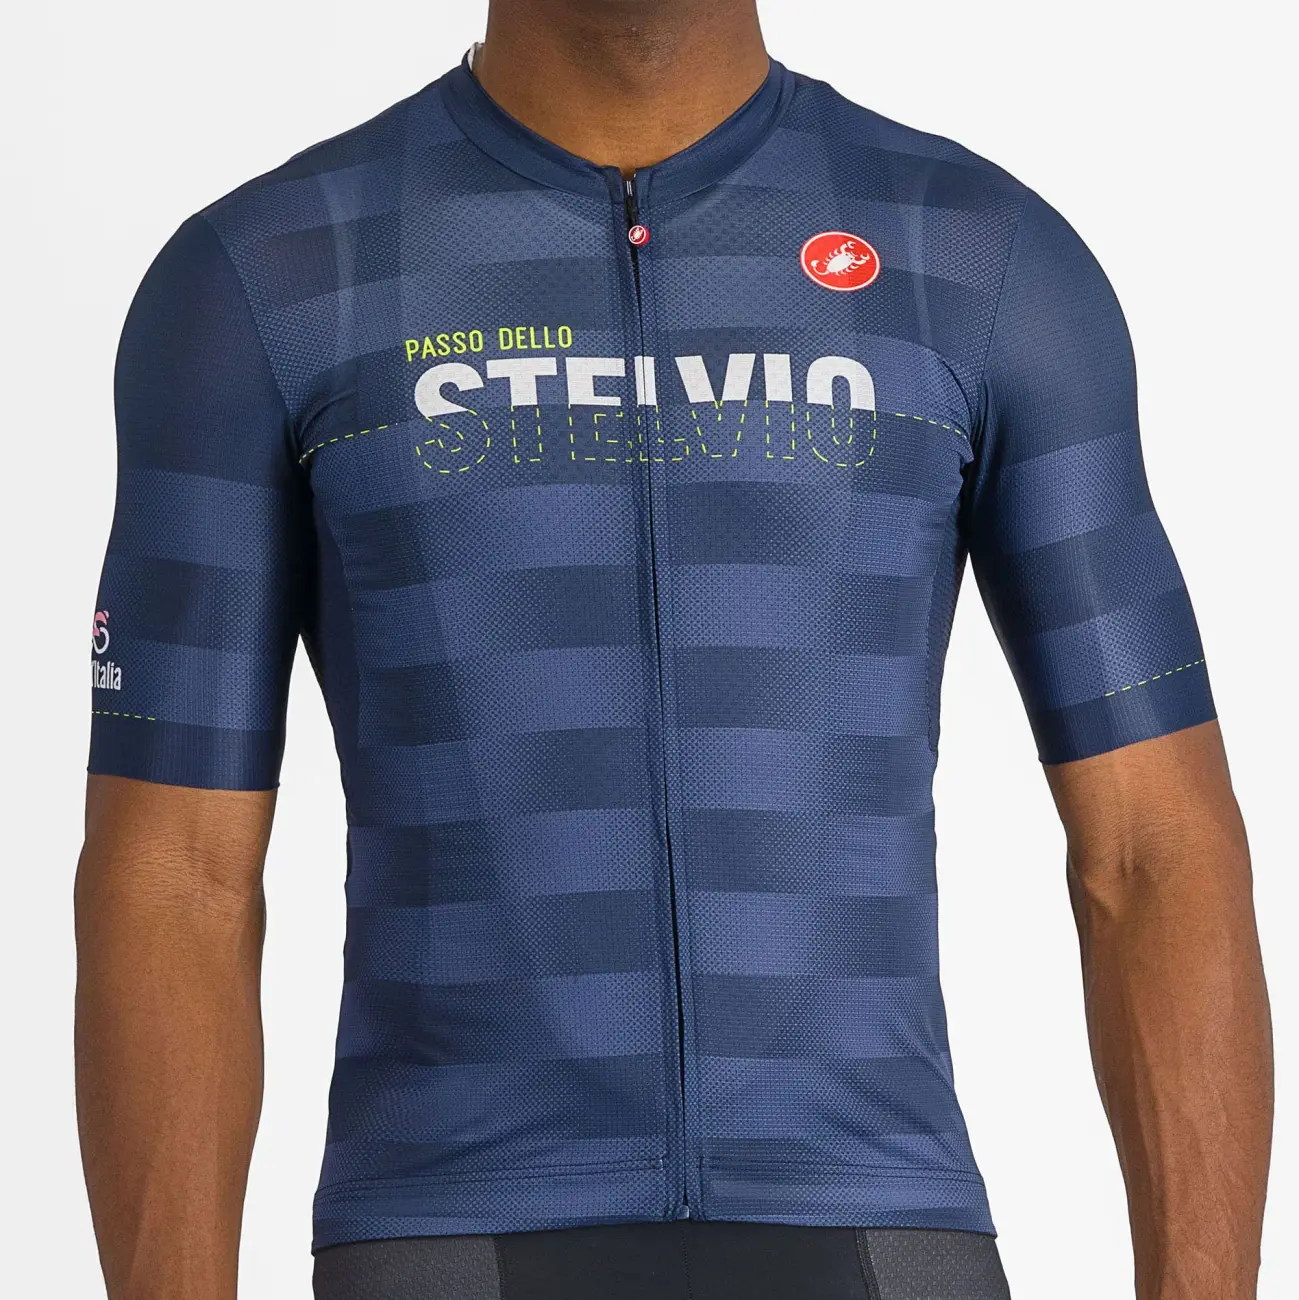 CASTELLI Cyklistický dres s krátkým rukávem - GIRO107 STELVIO - modrá XL